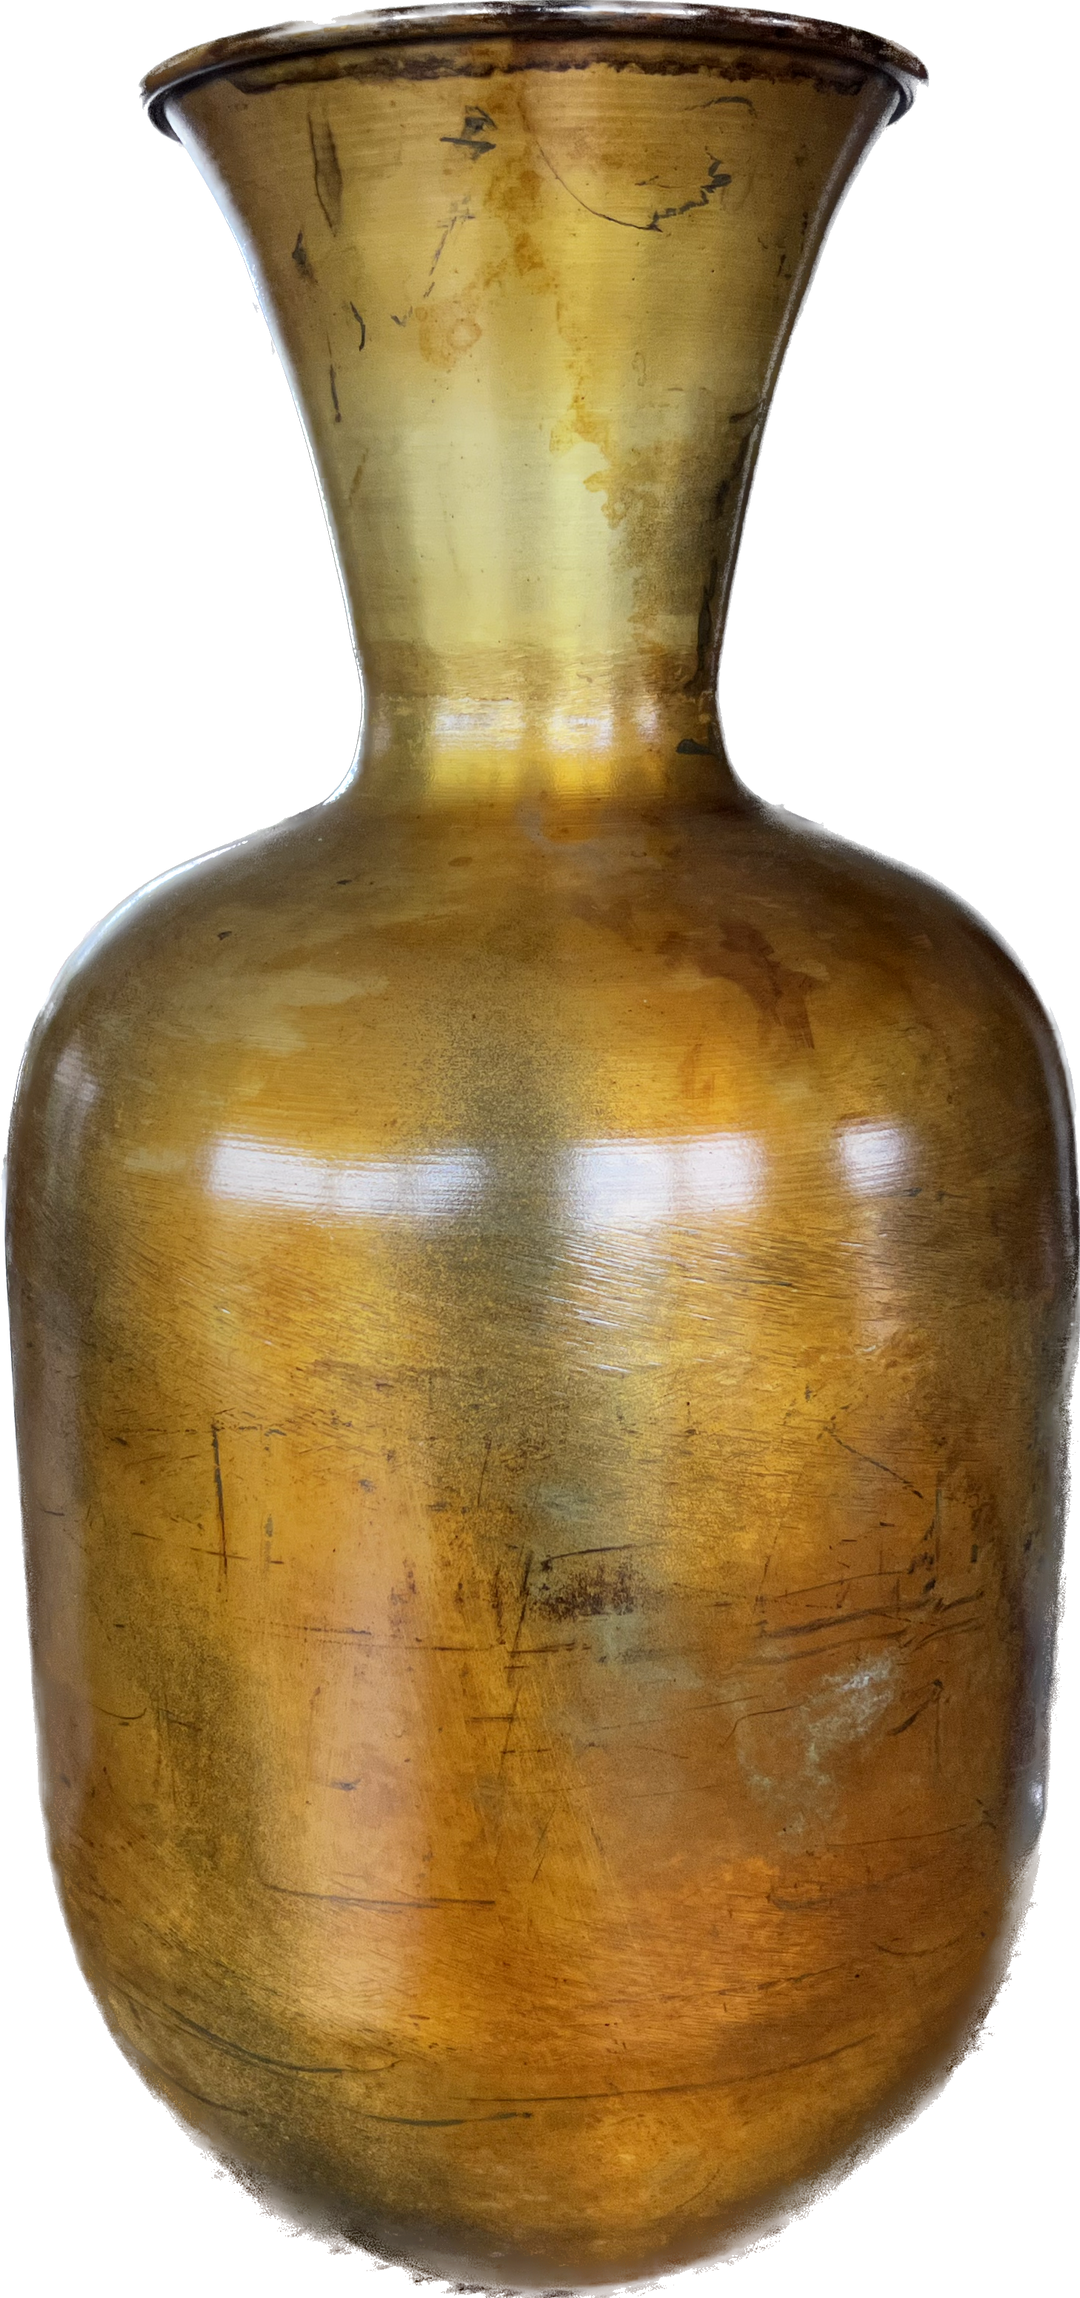 Vaas Antique Brass - 37 cm hoog - Goud metaal